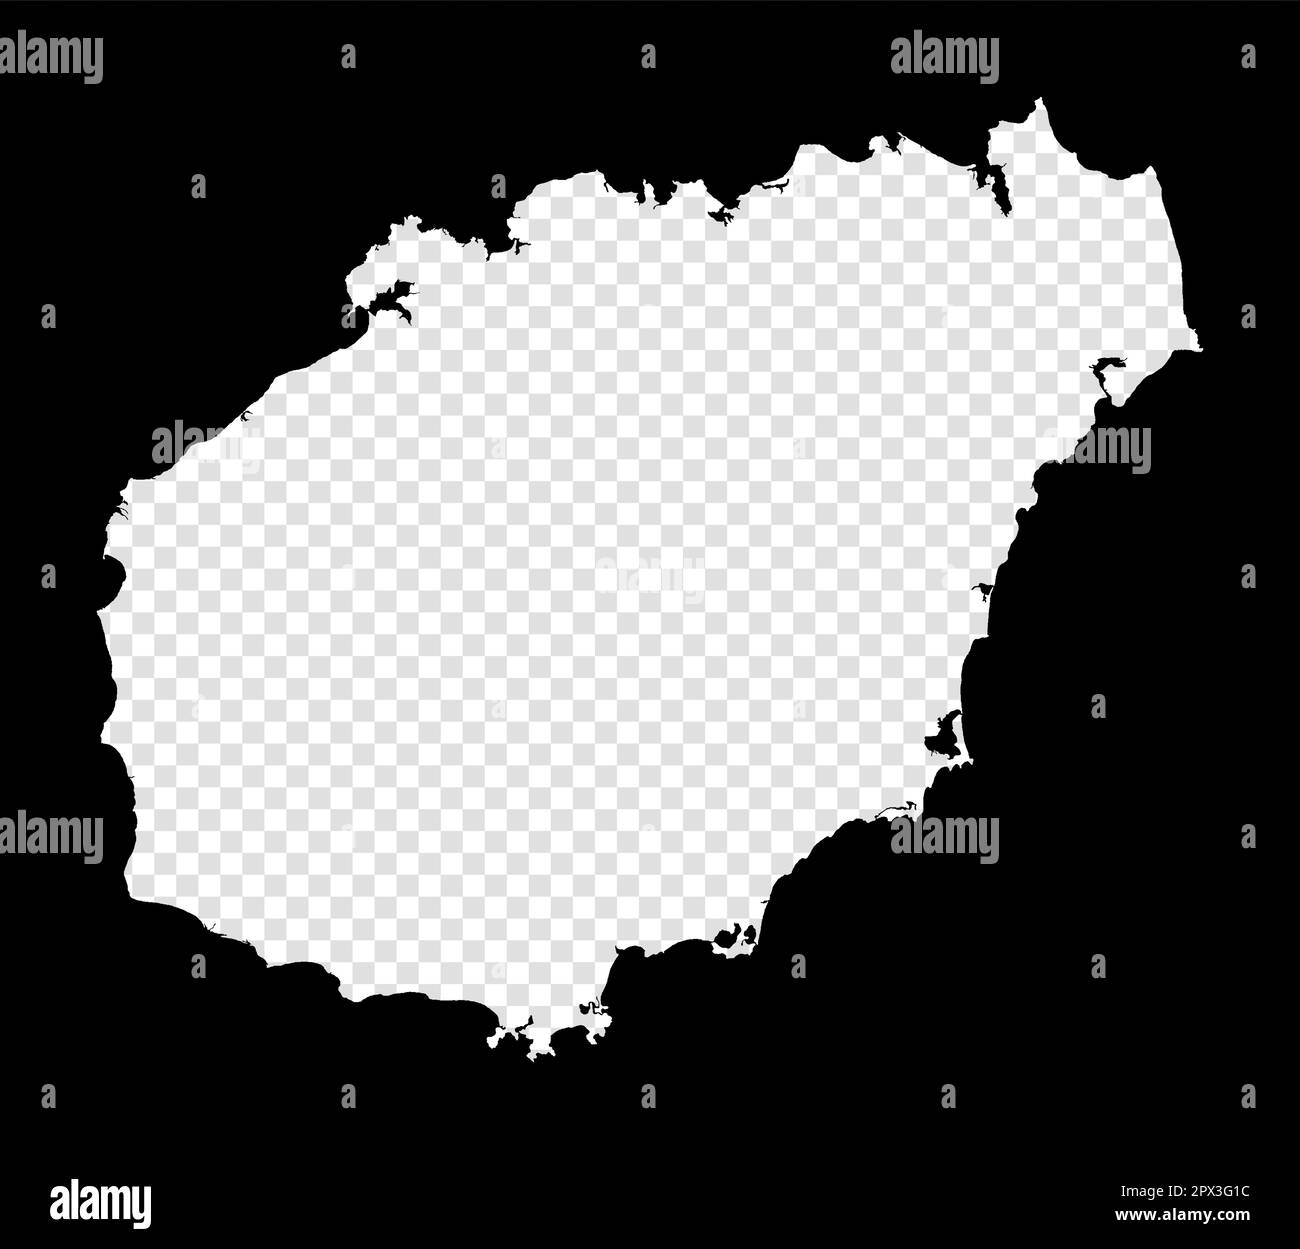 Schablonenkarte von Hainan. Einfache und minimal transparente Karte von Hainan. Schwarzes Rechteck mit Schnittform der Insel. Fesselnde Vektordarstellung. Stock Vektor